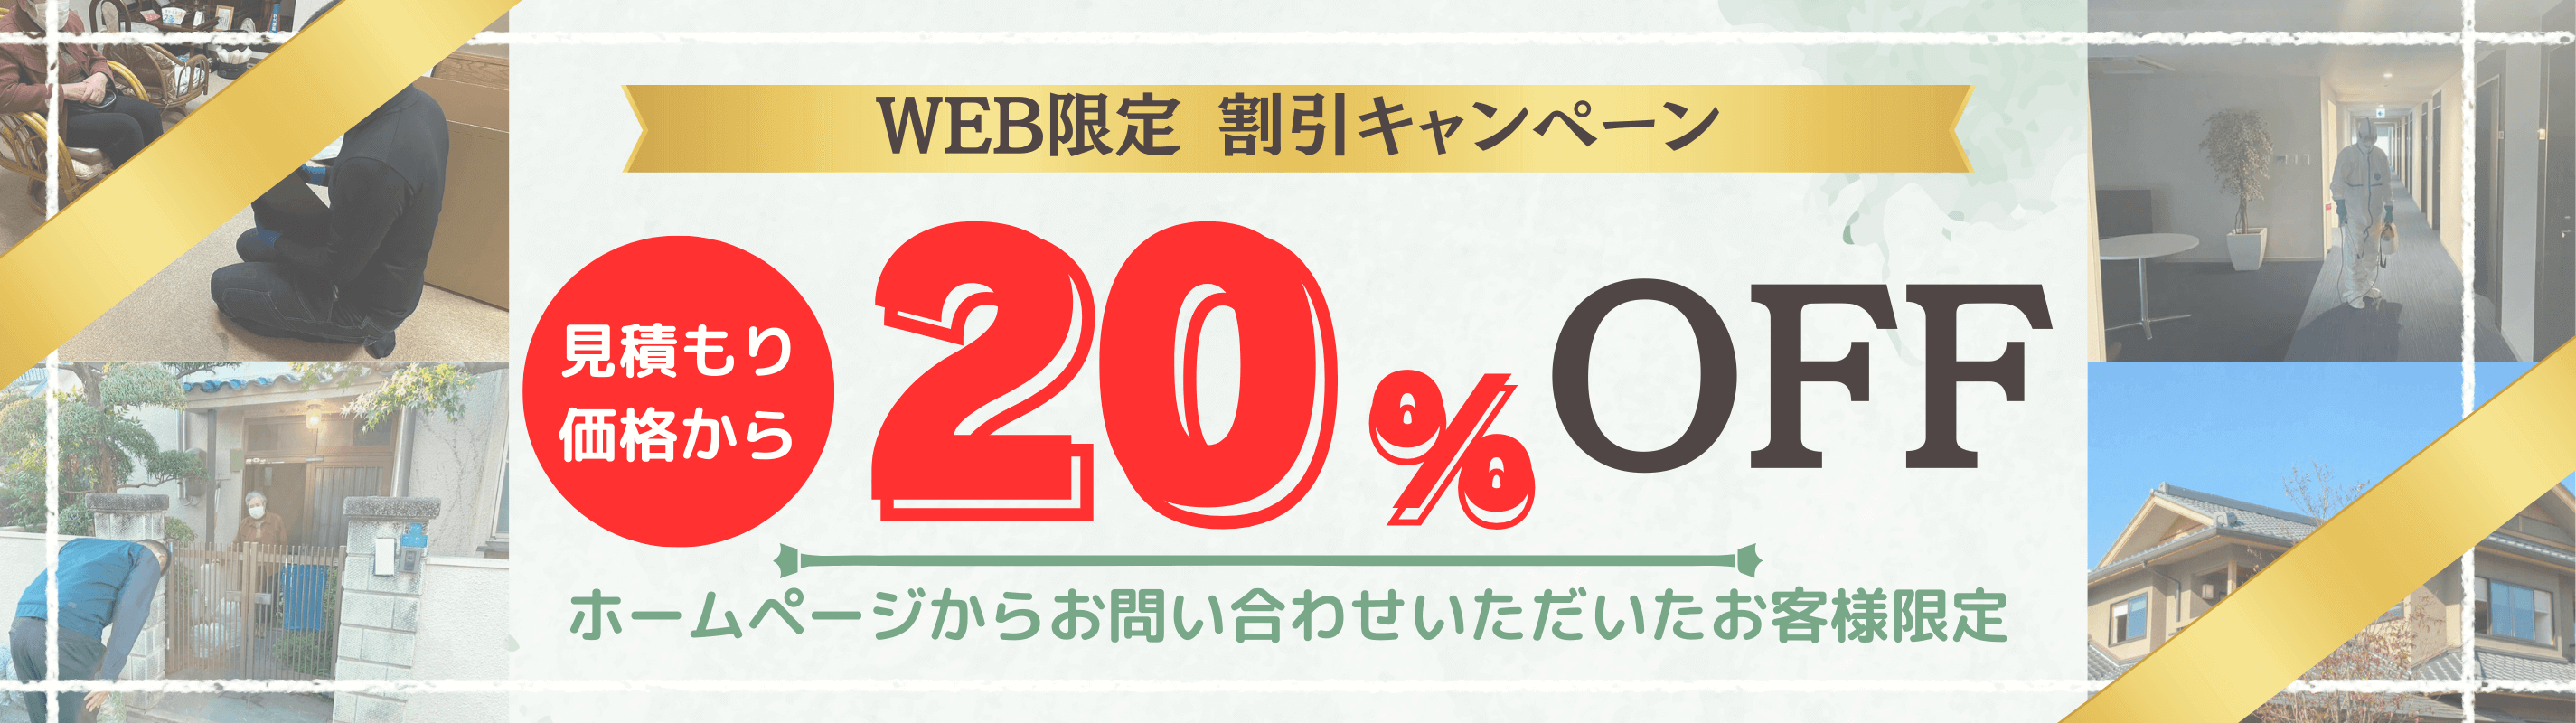 大阪府遺品整理20%OFFキャンペーン